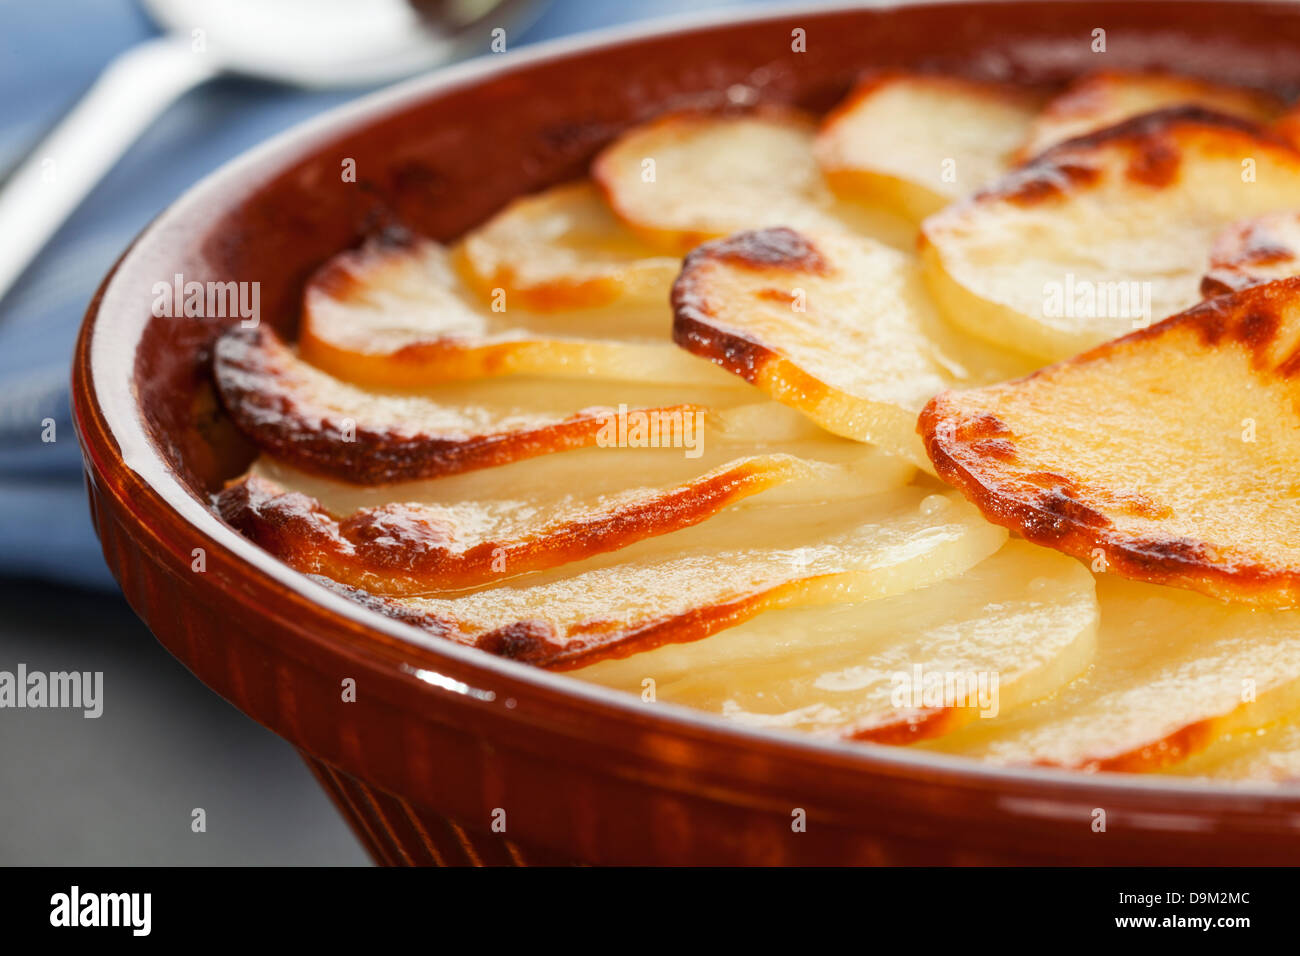 Boulangere Kartoffeln, eine berühmte französische Gericht in Scheiben geschnittene Zwiebel und Kartoffeln gebacken auf Lager. So genannt, weil in der Vergangenheit, Französisch... Stockfoto